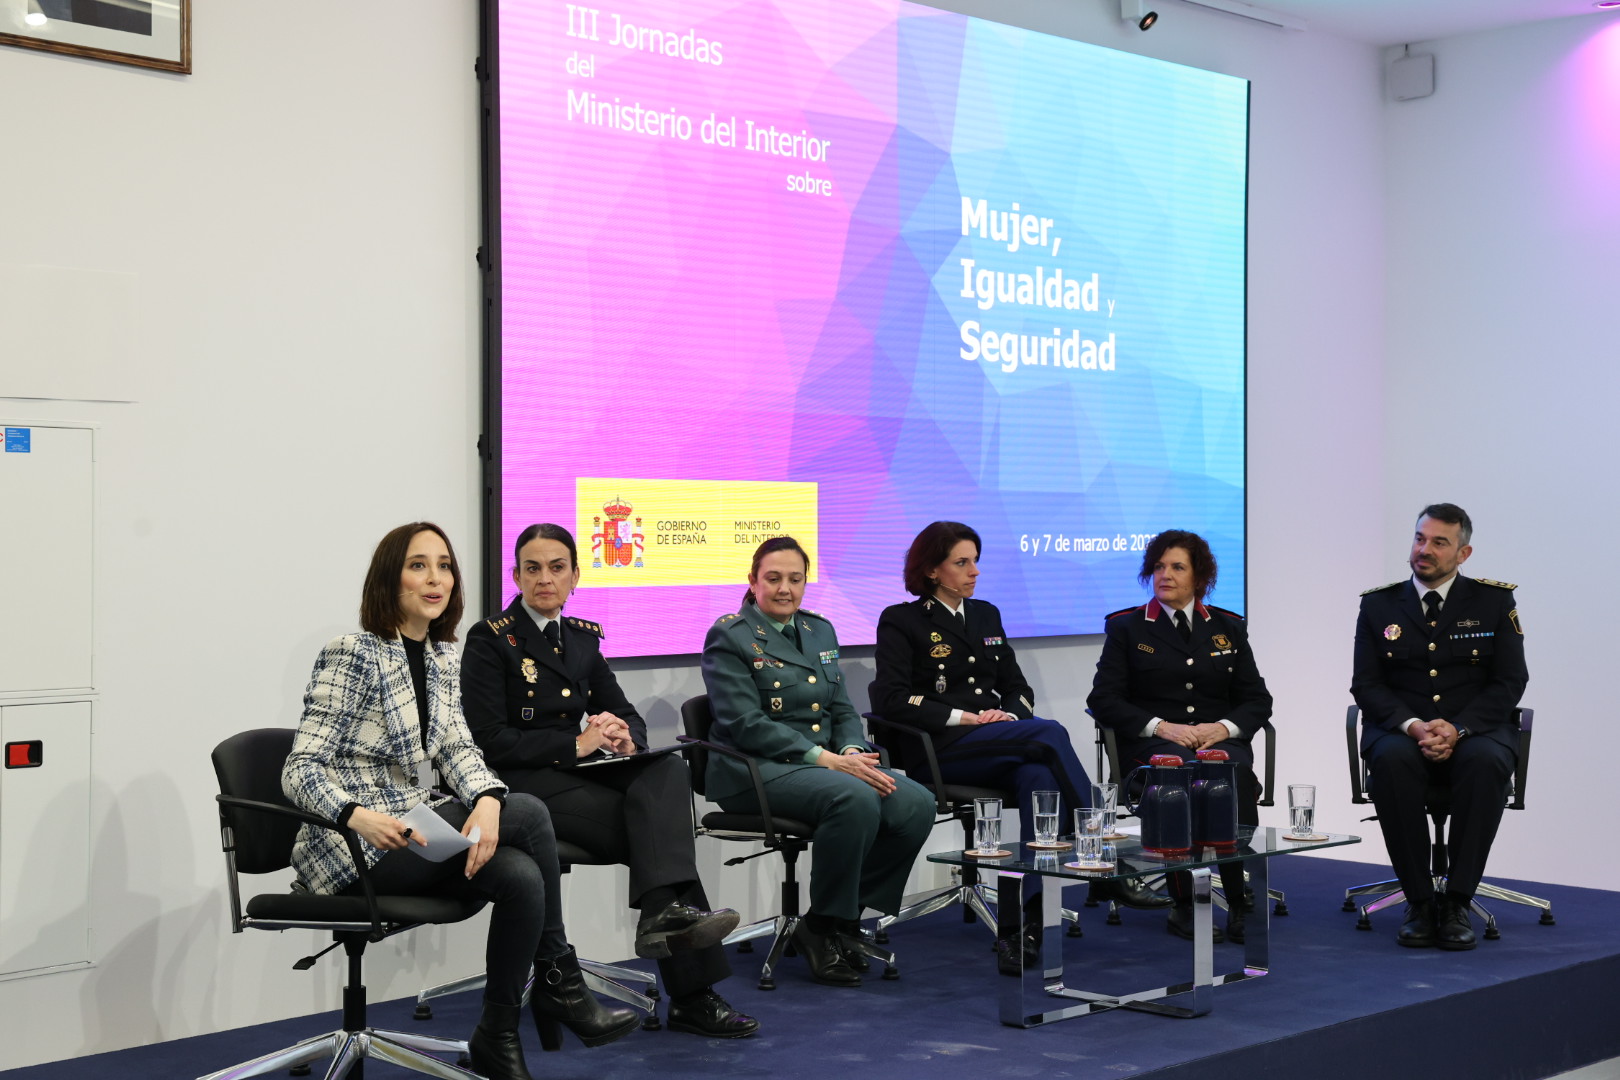 Grande-Marlaska: “La igualdad de género en las Fuerzas y Cuerpos de Seguridad necesita iniciativas valientes e innovadoras”